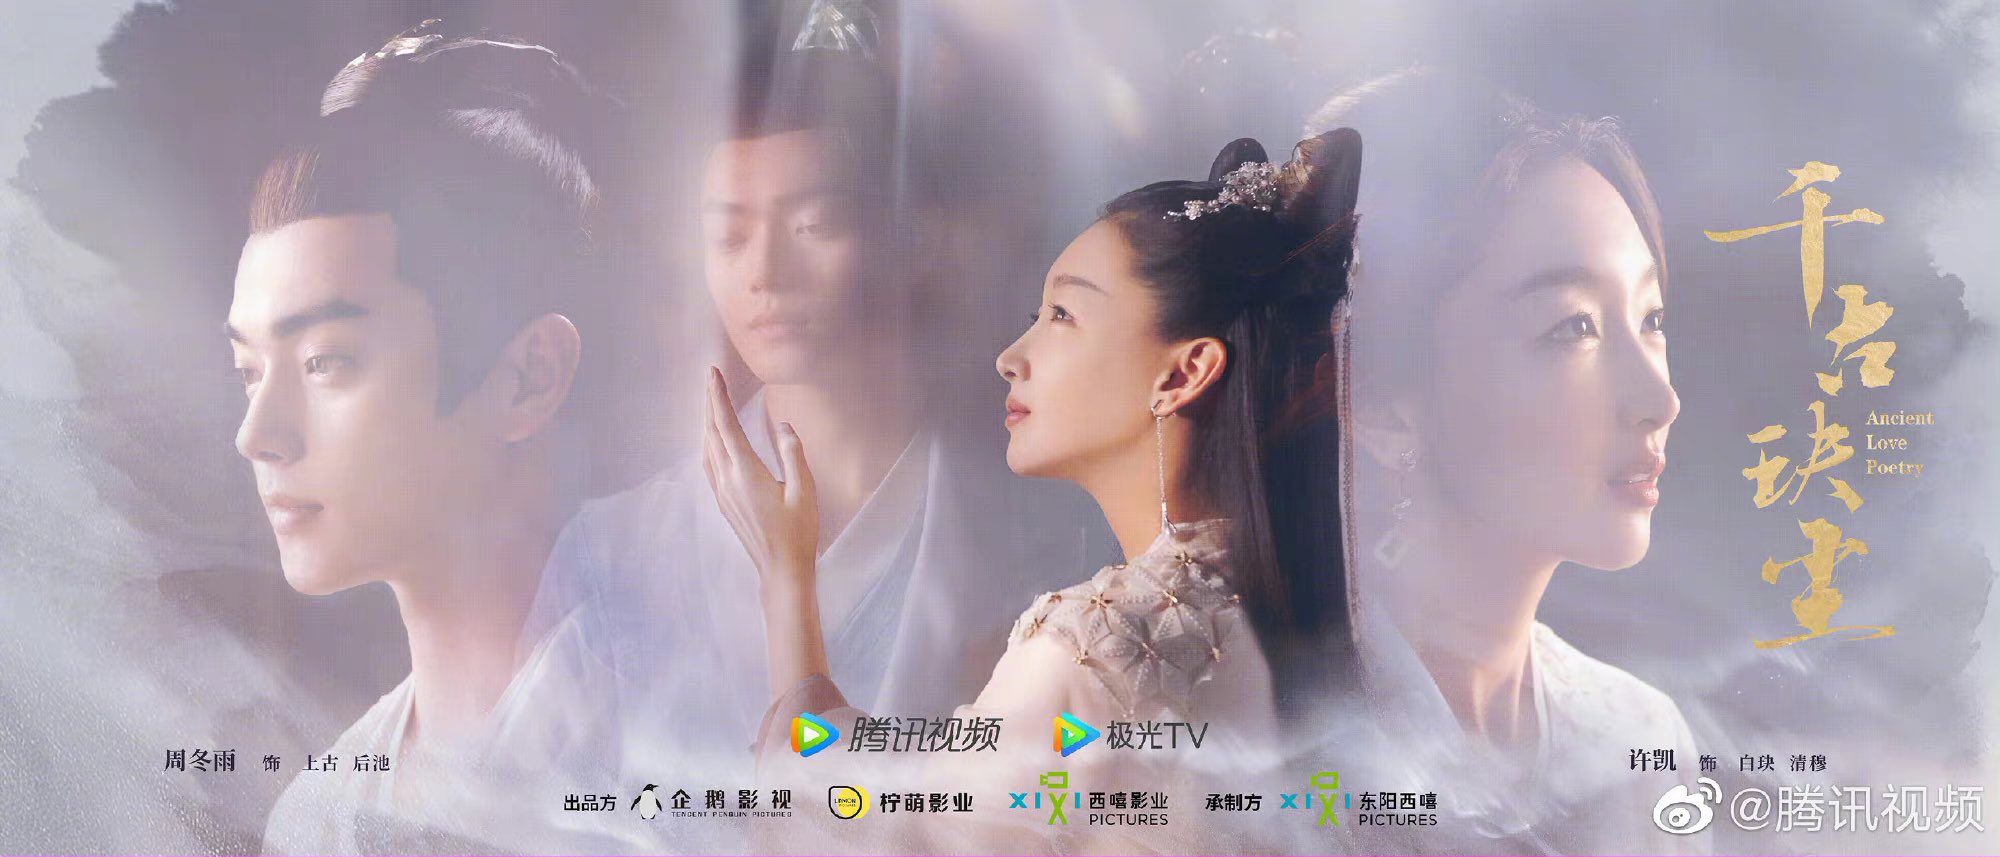 Сюй Кай и Чжоу Дун Юй в новом трейлере дорамы "Древняя любовная поэзия"